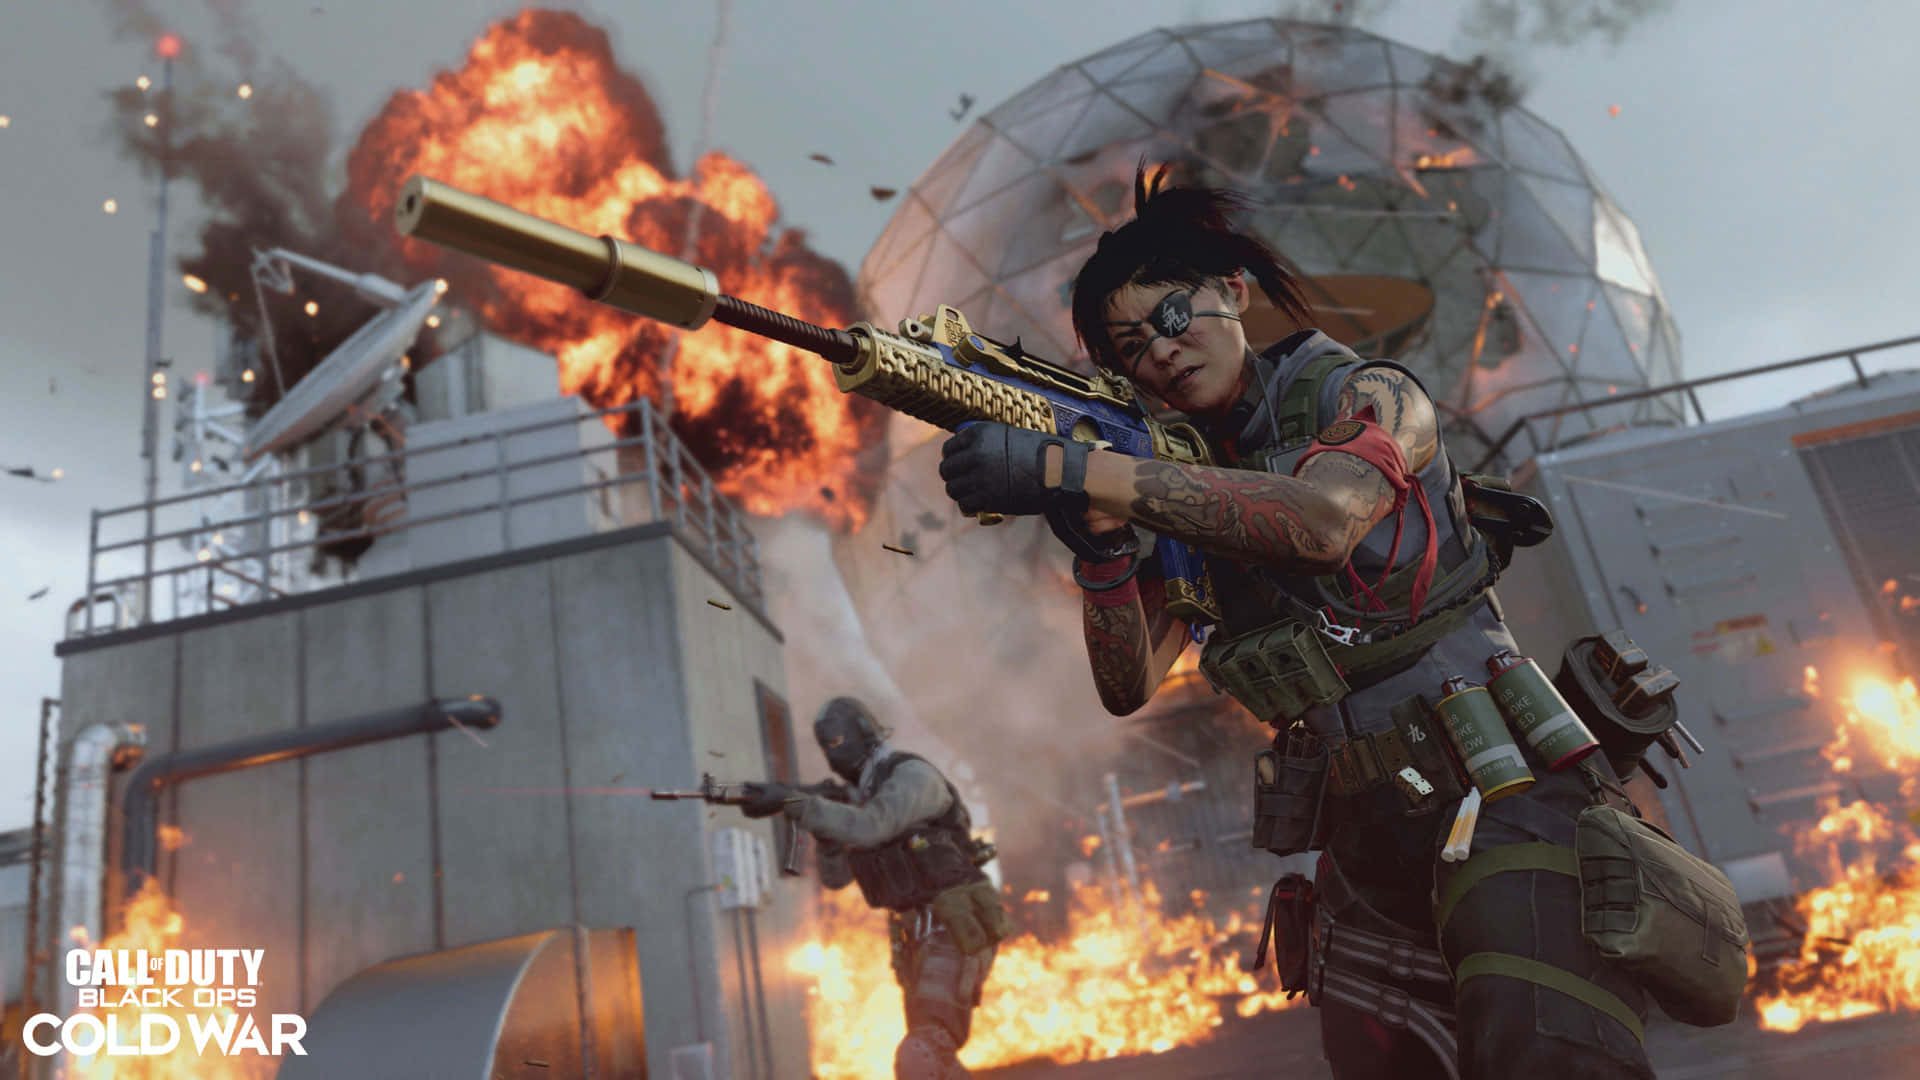 Preparatiper Un'avventura Emozionante Con Call Of Duty Black Ops Cold War